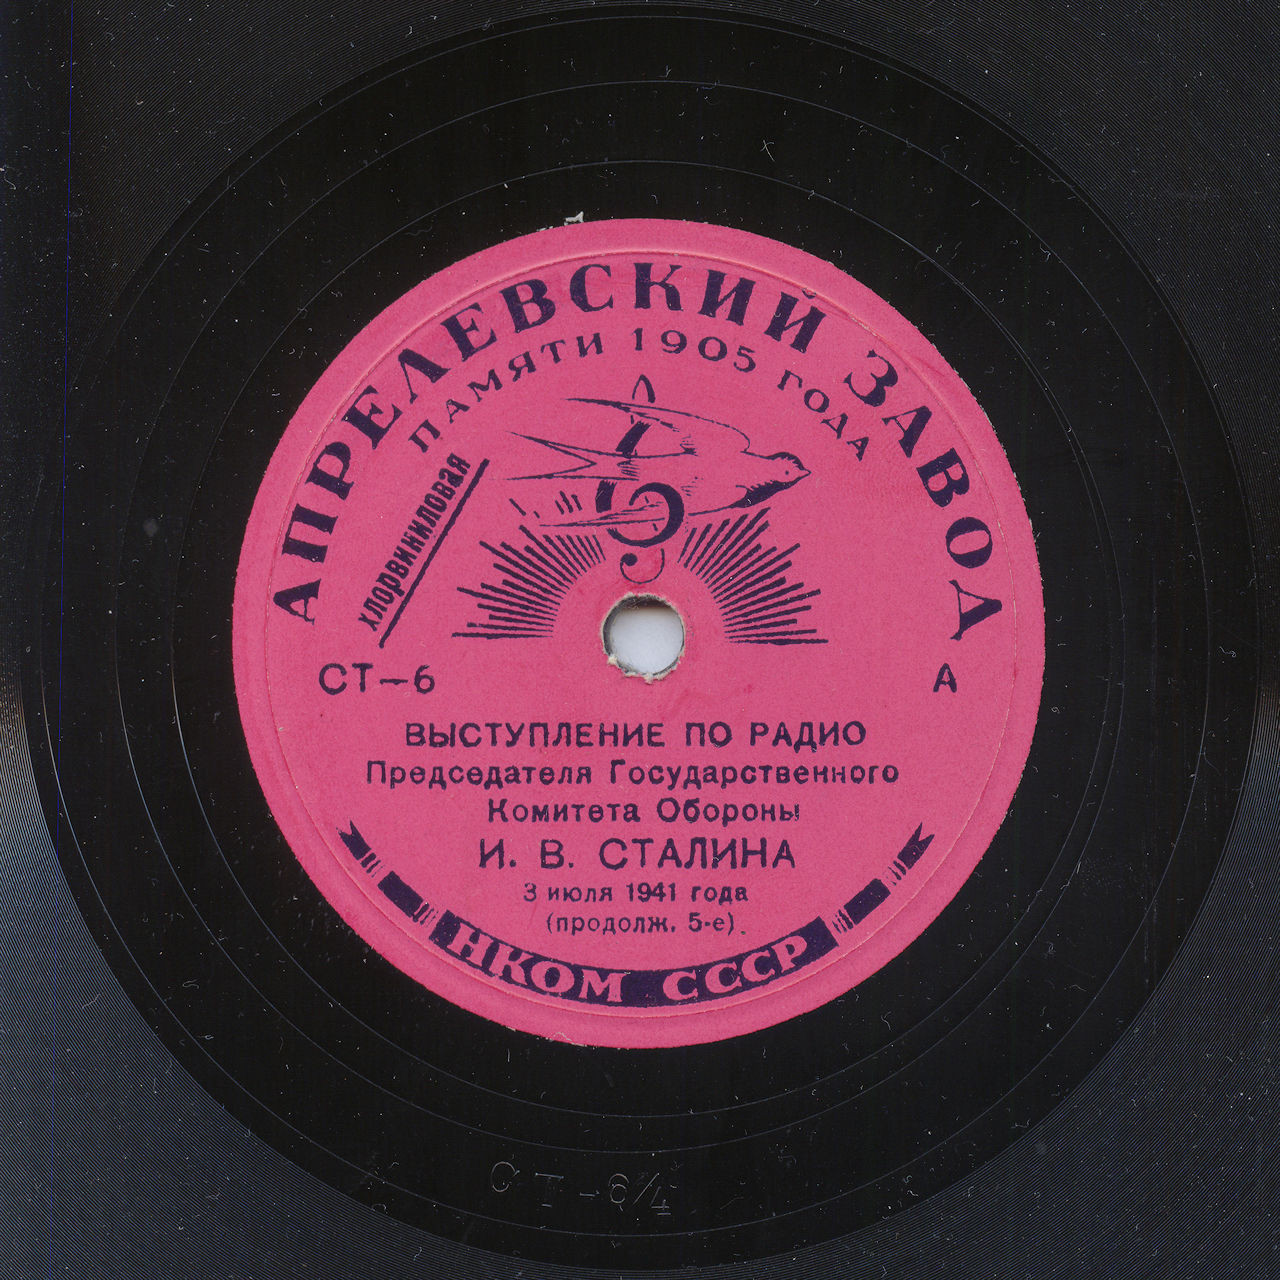 И. В. Сталин - Выступление по радио 3 июля 1941 г.